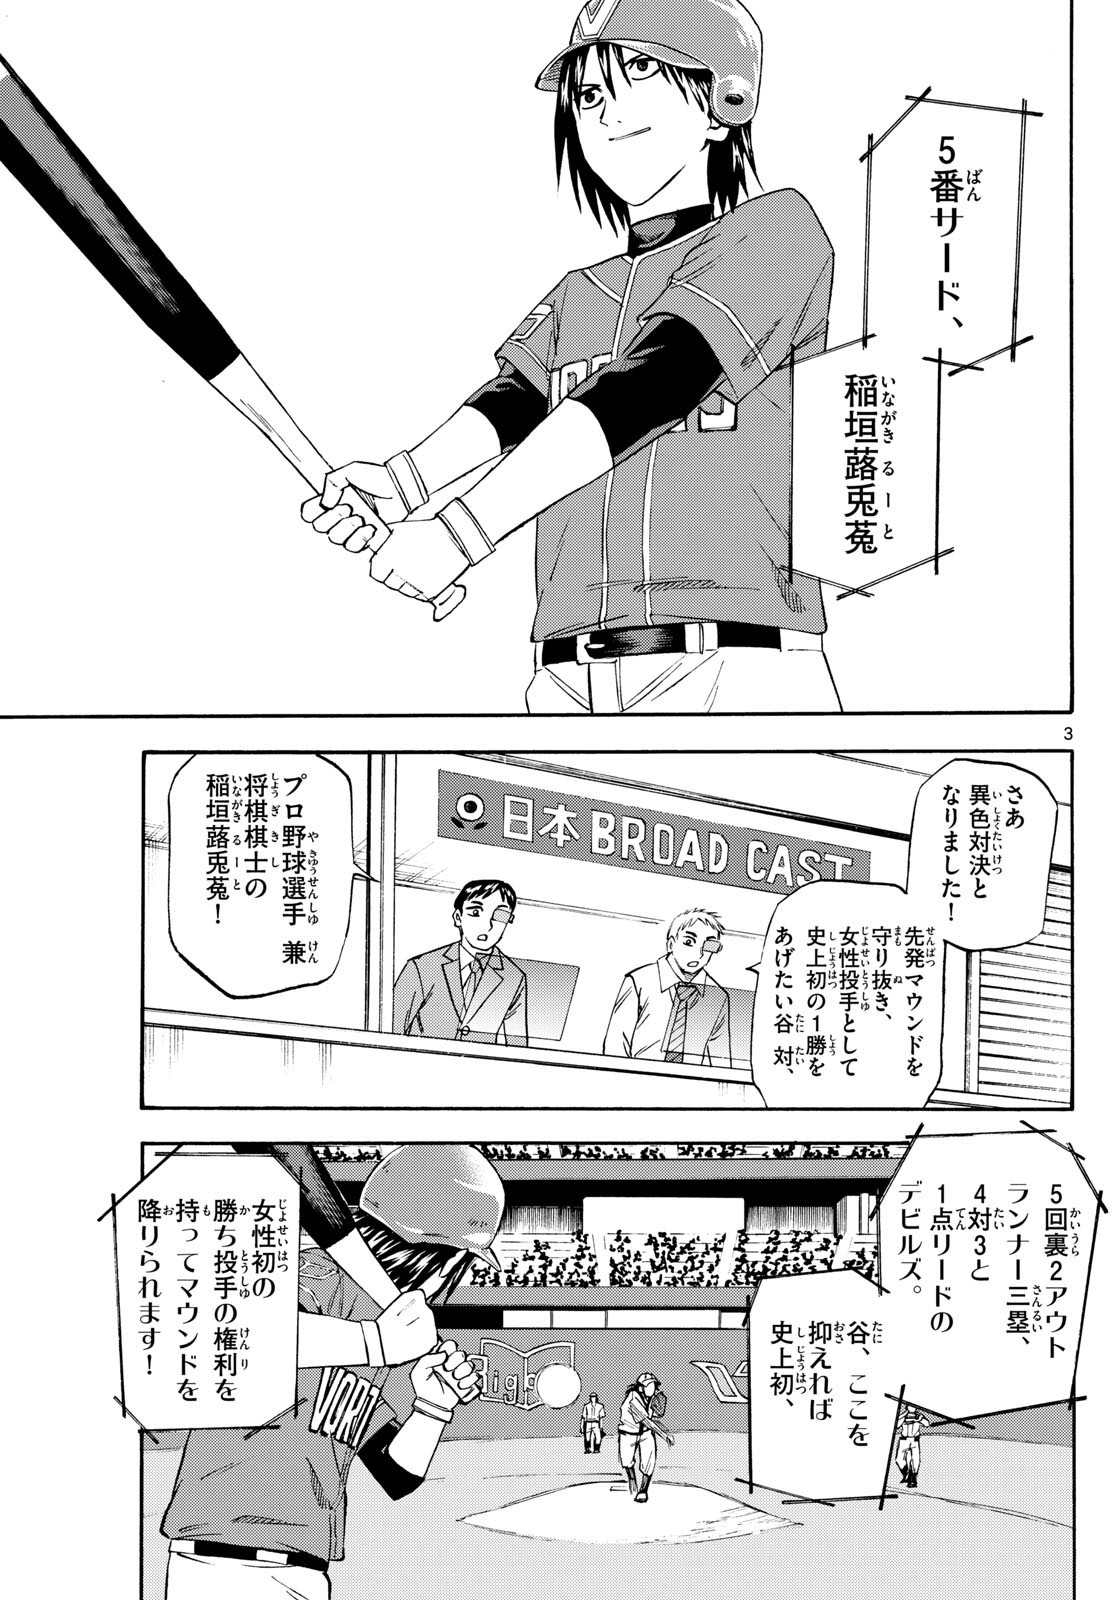 Tatsu to Ichigo - Chapter 197 - Page 3